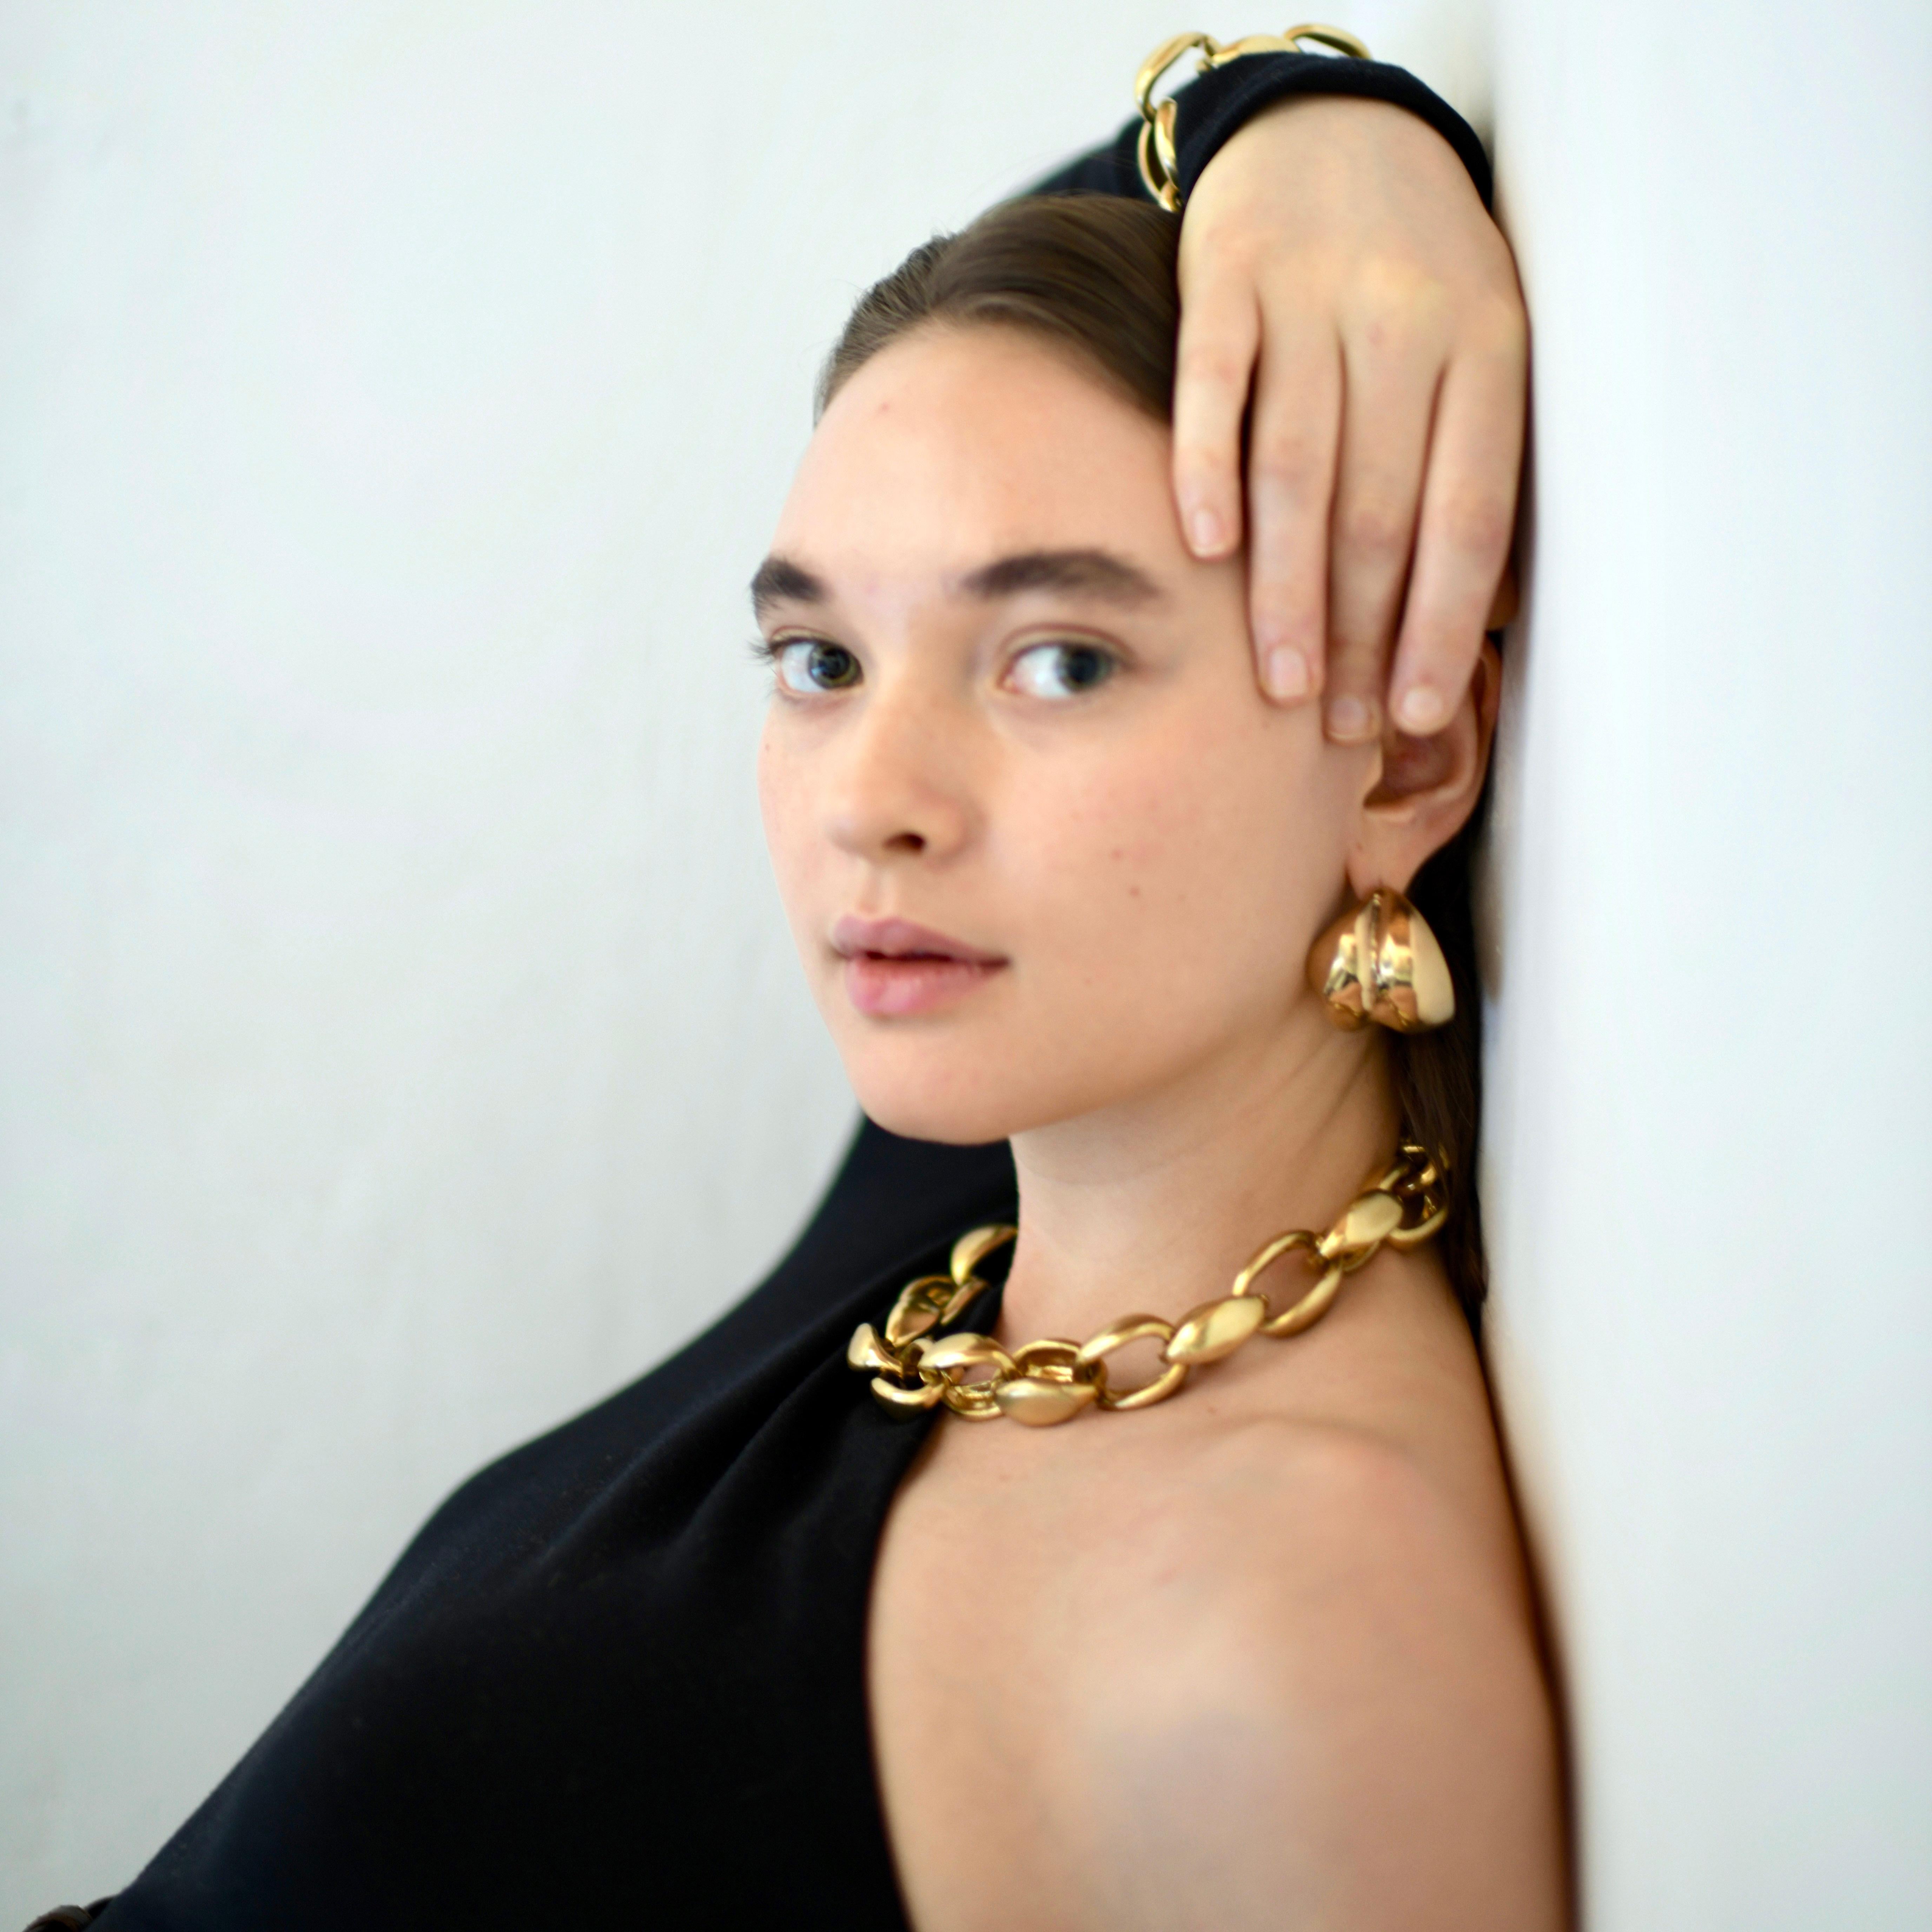 Le collier à chaîne Ariana Boussard-Reifel Apnet est une  chaîne épaisse d'inspiration patrimoniale, rappelant le style équestre. Ce collier évoque un sens du glamour et de la gravité qui convient aussi bien à une écurie de chevaux qu'à une vidéo de